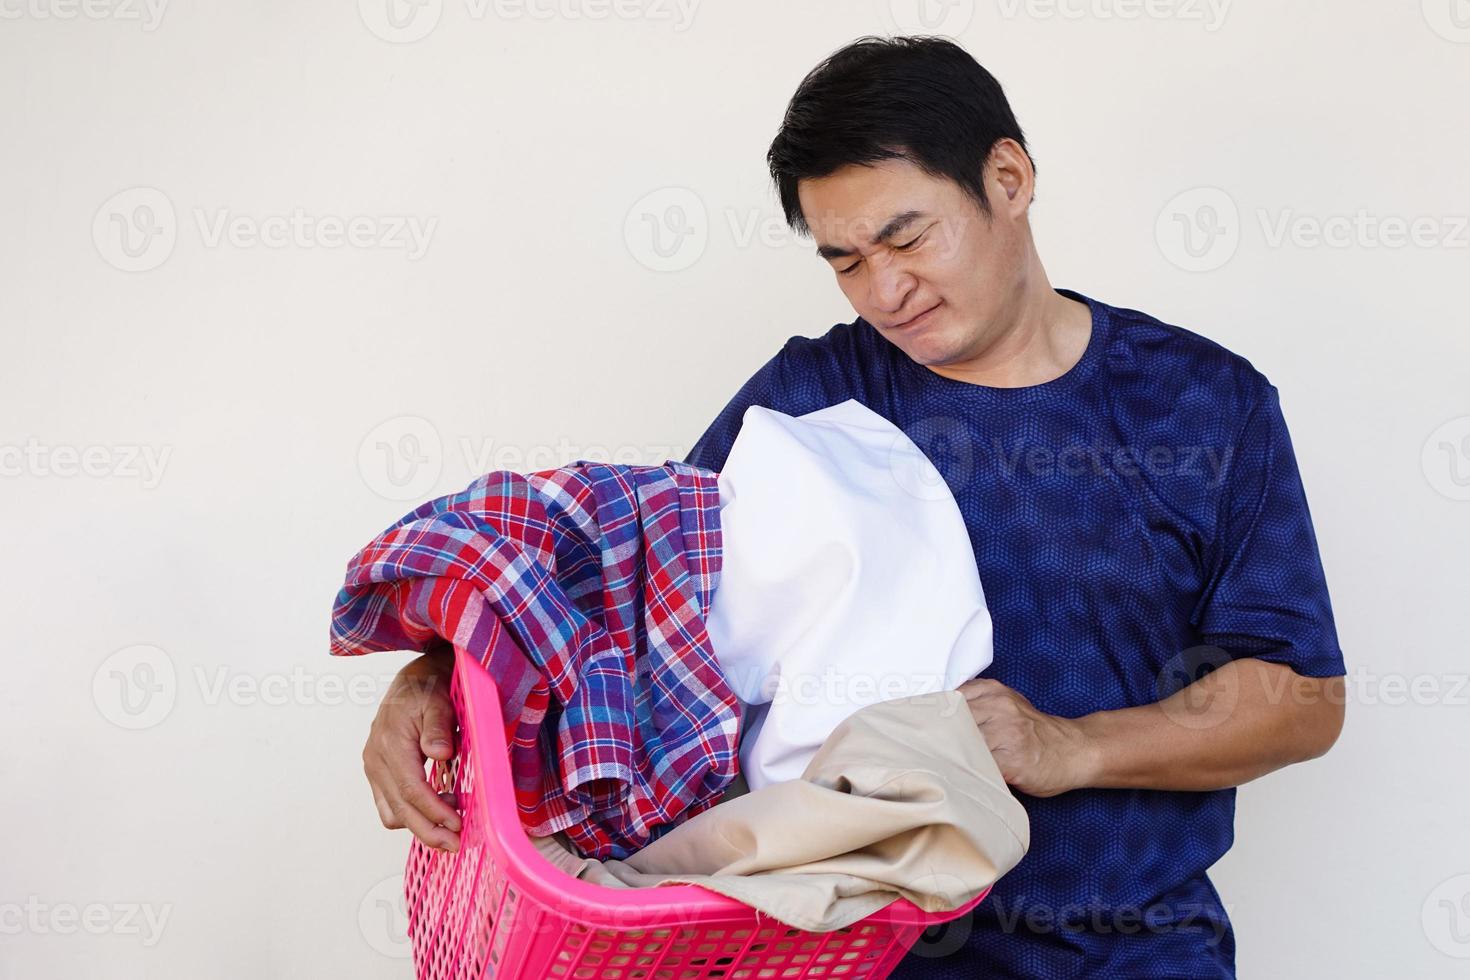 homem asiático segura cesto de roupas, sente-se entediado e preguiçoso, não quer lavar roupa. conceito, tarefa chata, tarefas domésticas. homem não quer lavar roupa. foto